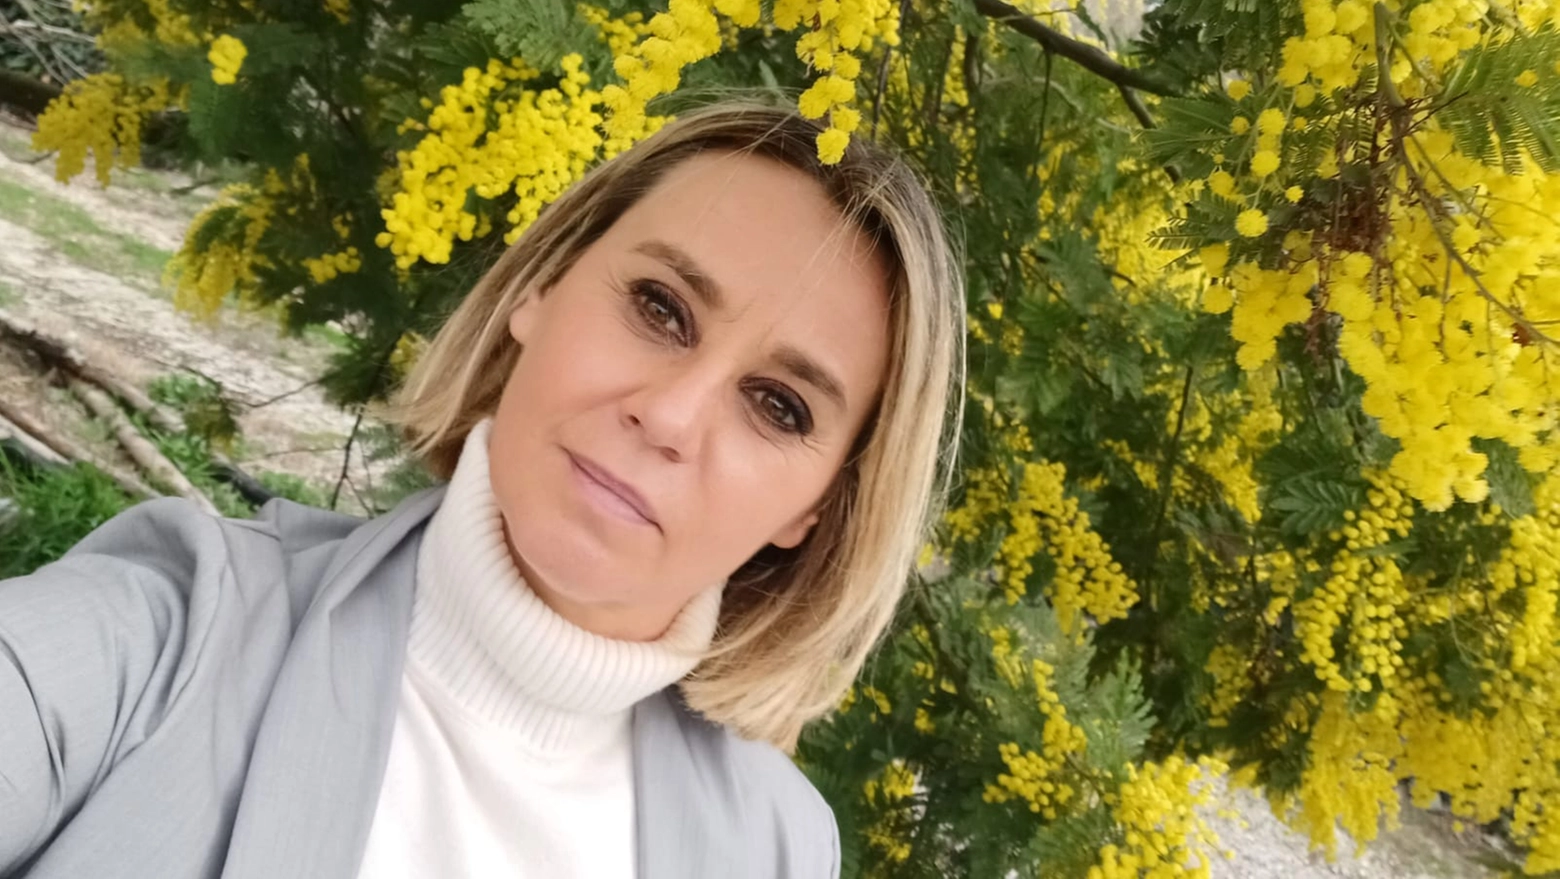 Sarà l’equinozio di Primavera ma Francesca Mugnai, specializzata in eco-psicologia, è convinta che esista una “una dipendenza umana dall’ambiente, un desiderio forte di connettersi con il sistema natura”